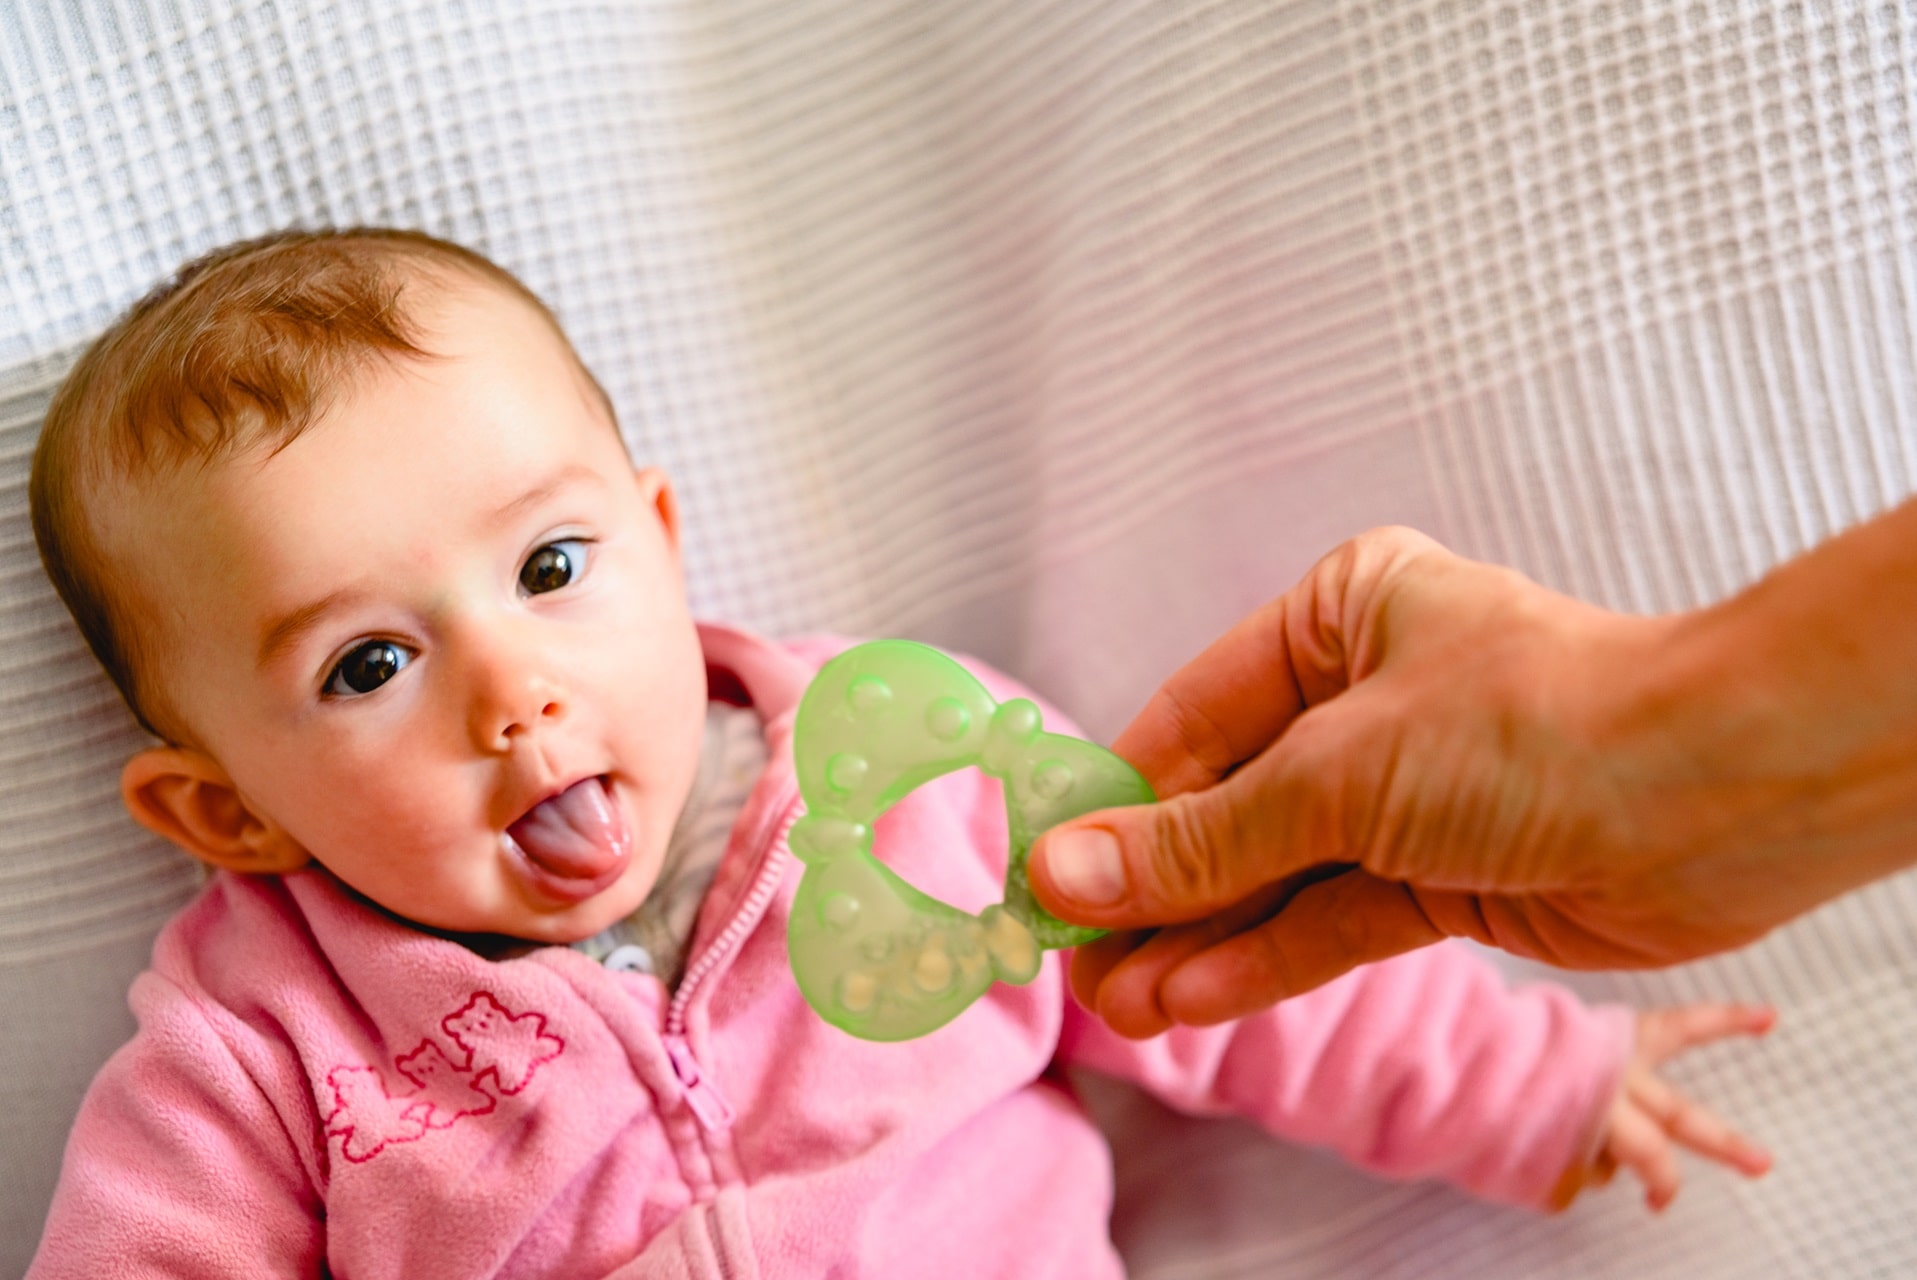 Teething period in infants